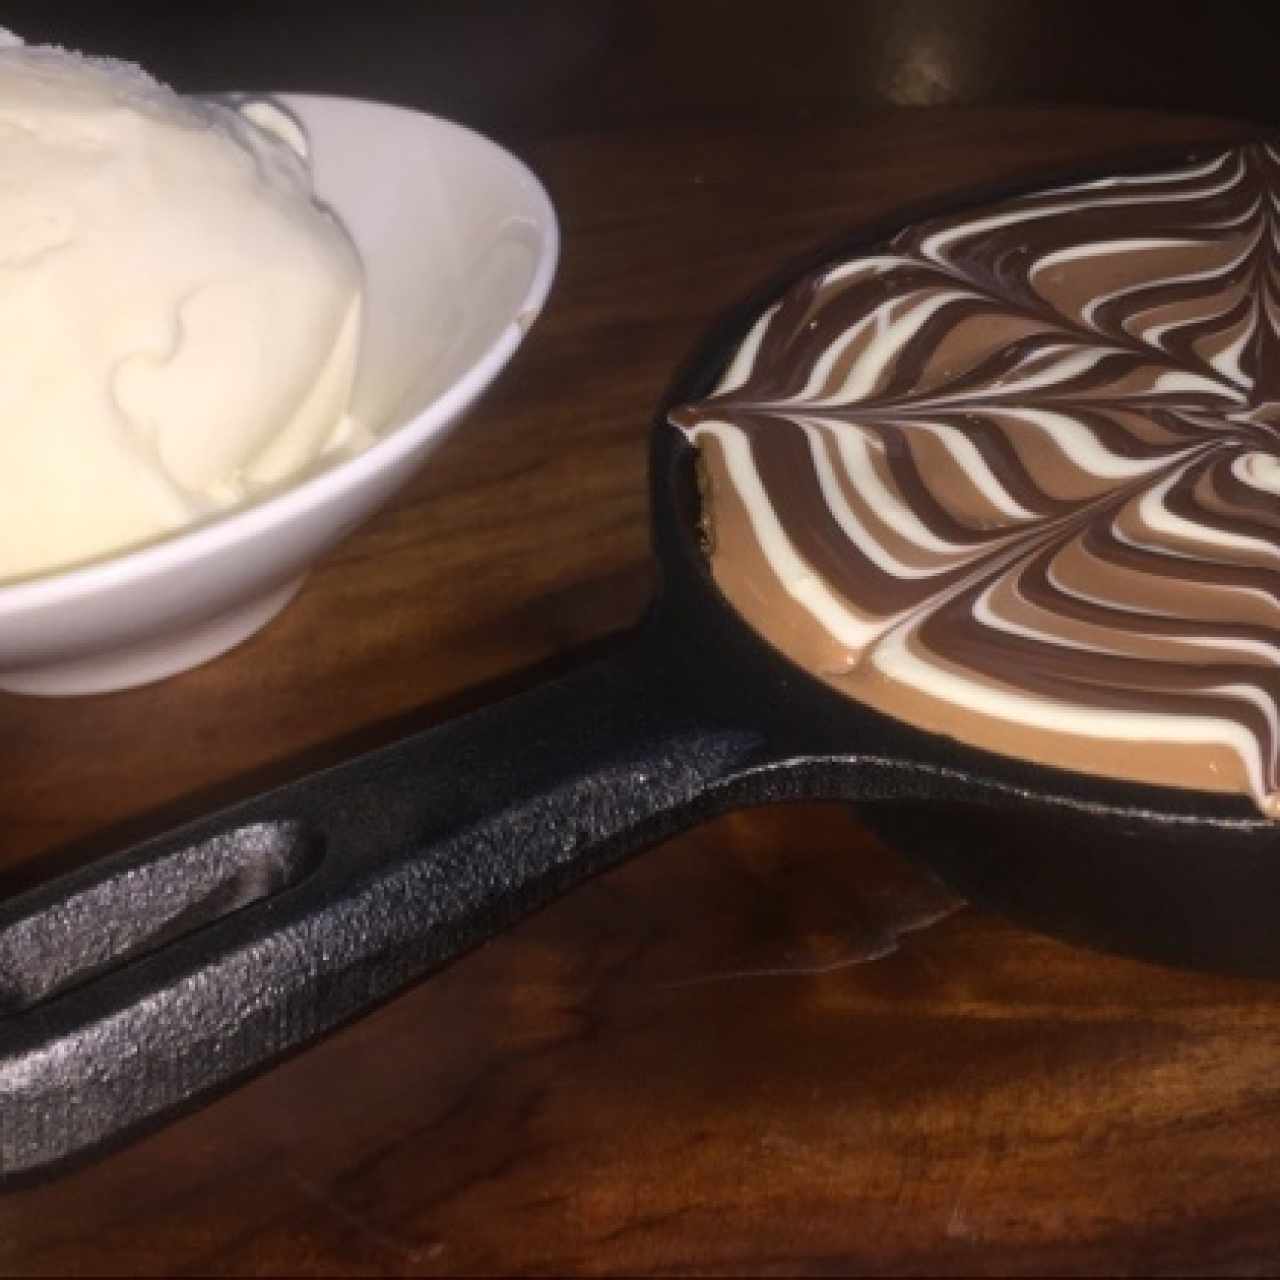 Galleta cubierta de chocolate con helado!